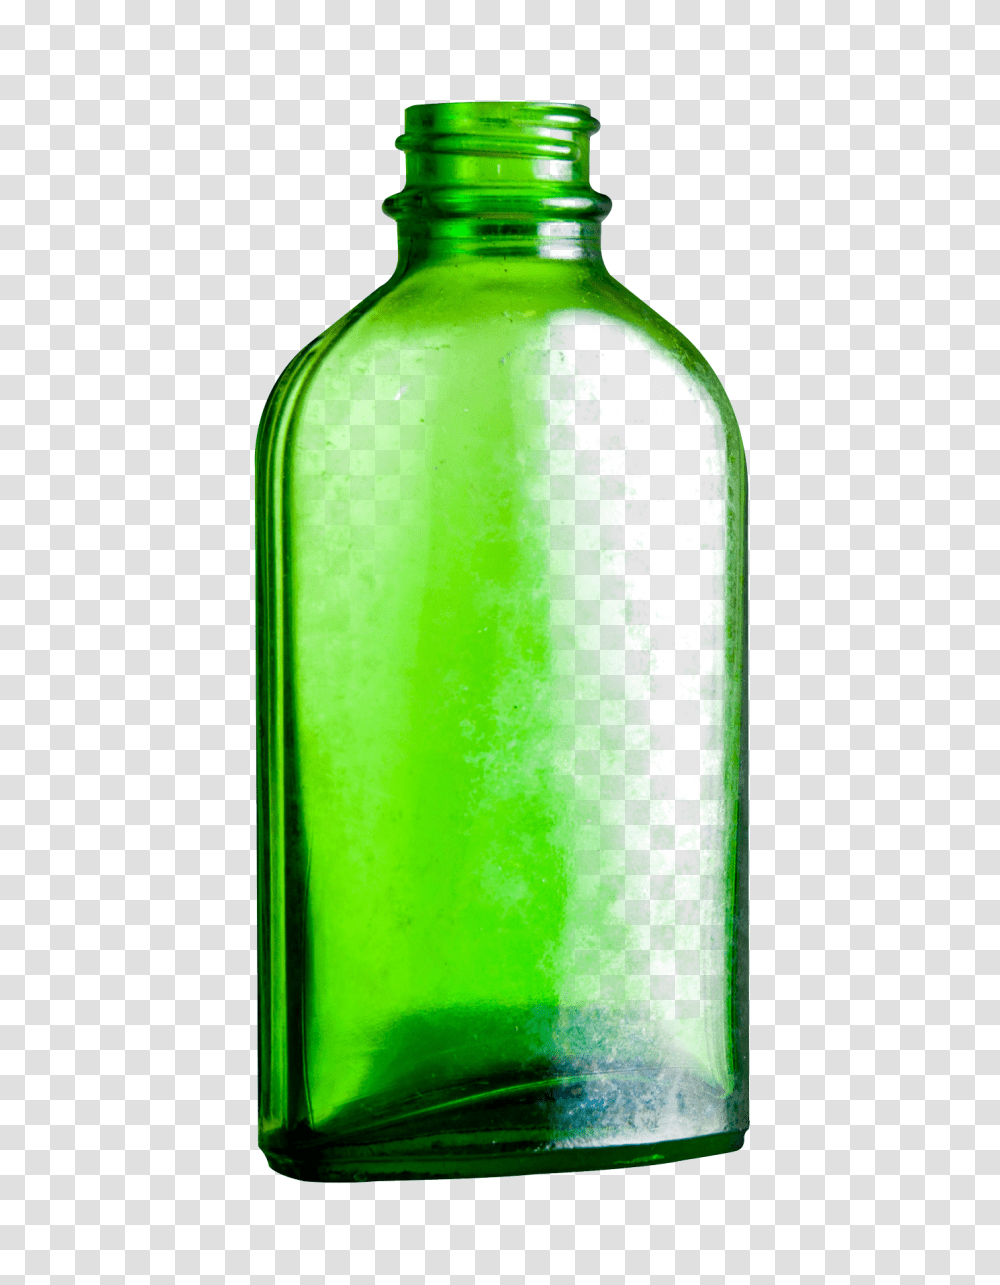 Hq Bottle Bottle Images, Shaker, Pop Bottle, Beverage, Drink Transparent Png